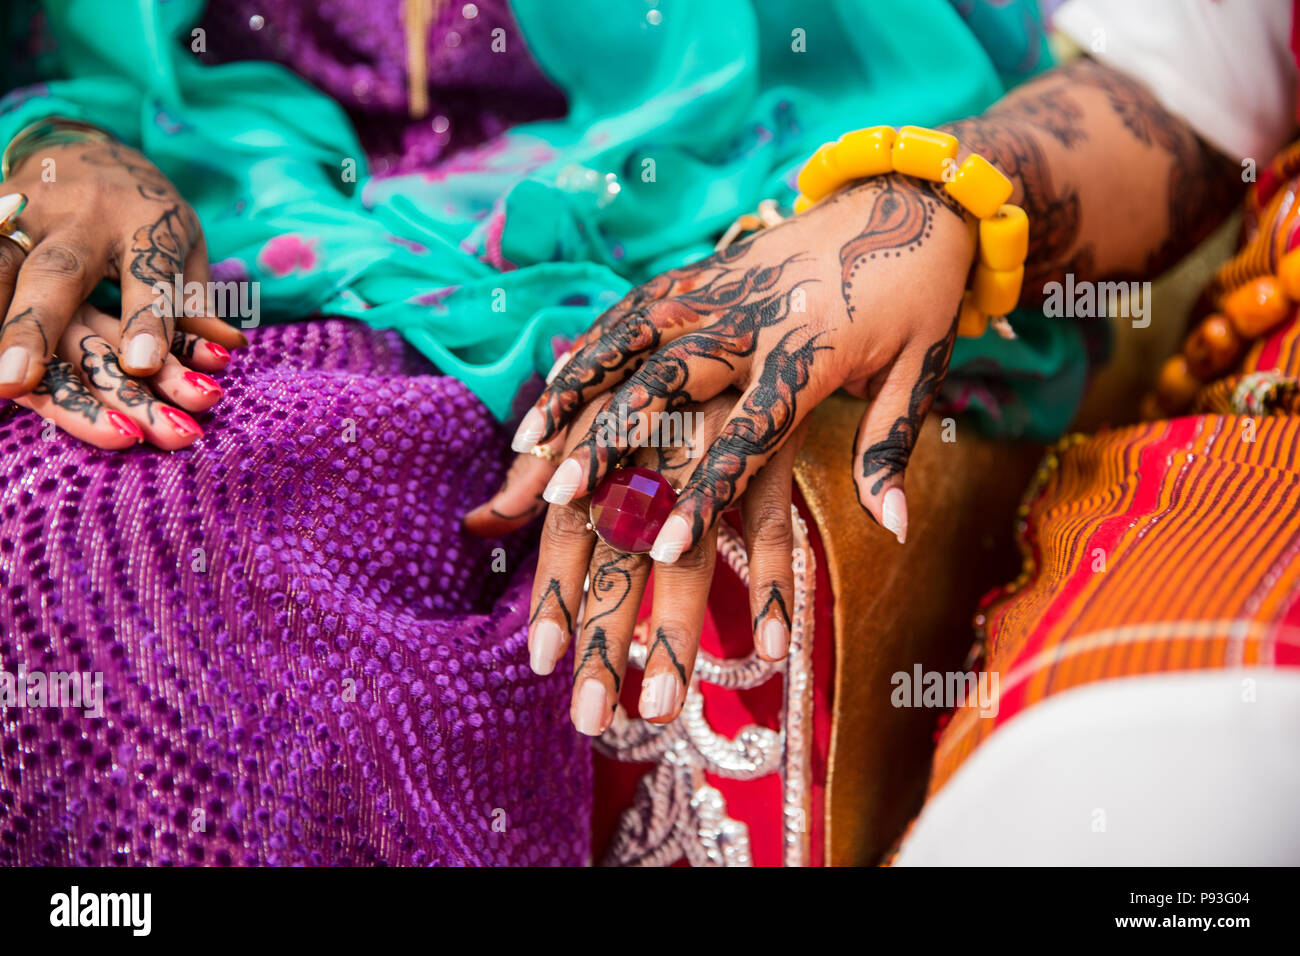 Le henné noir et brun dessins mains sur les femmes africaines pour la cérémonie du mariage Banque D'Images